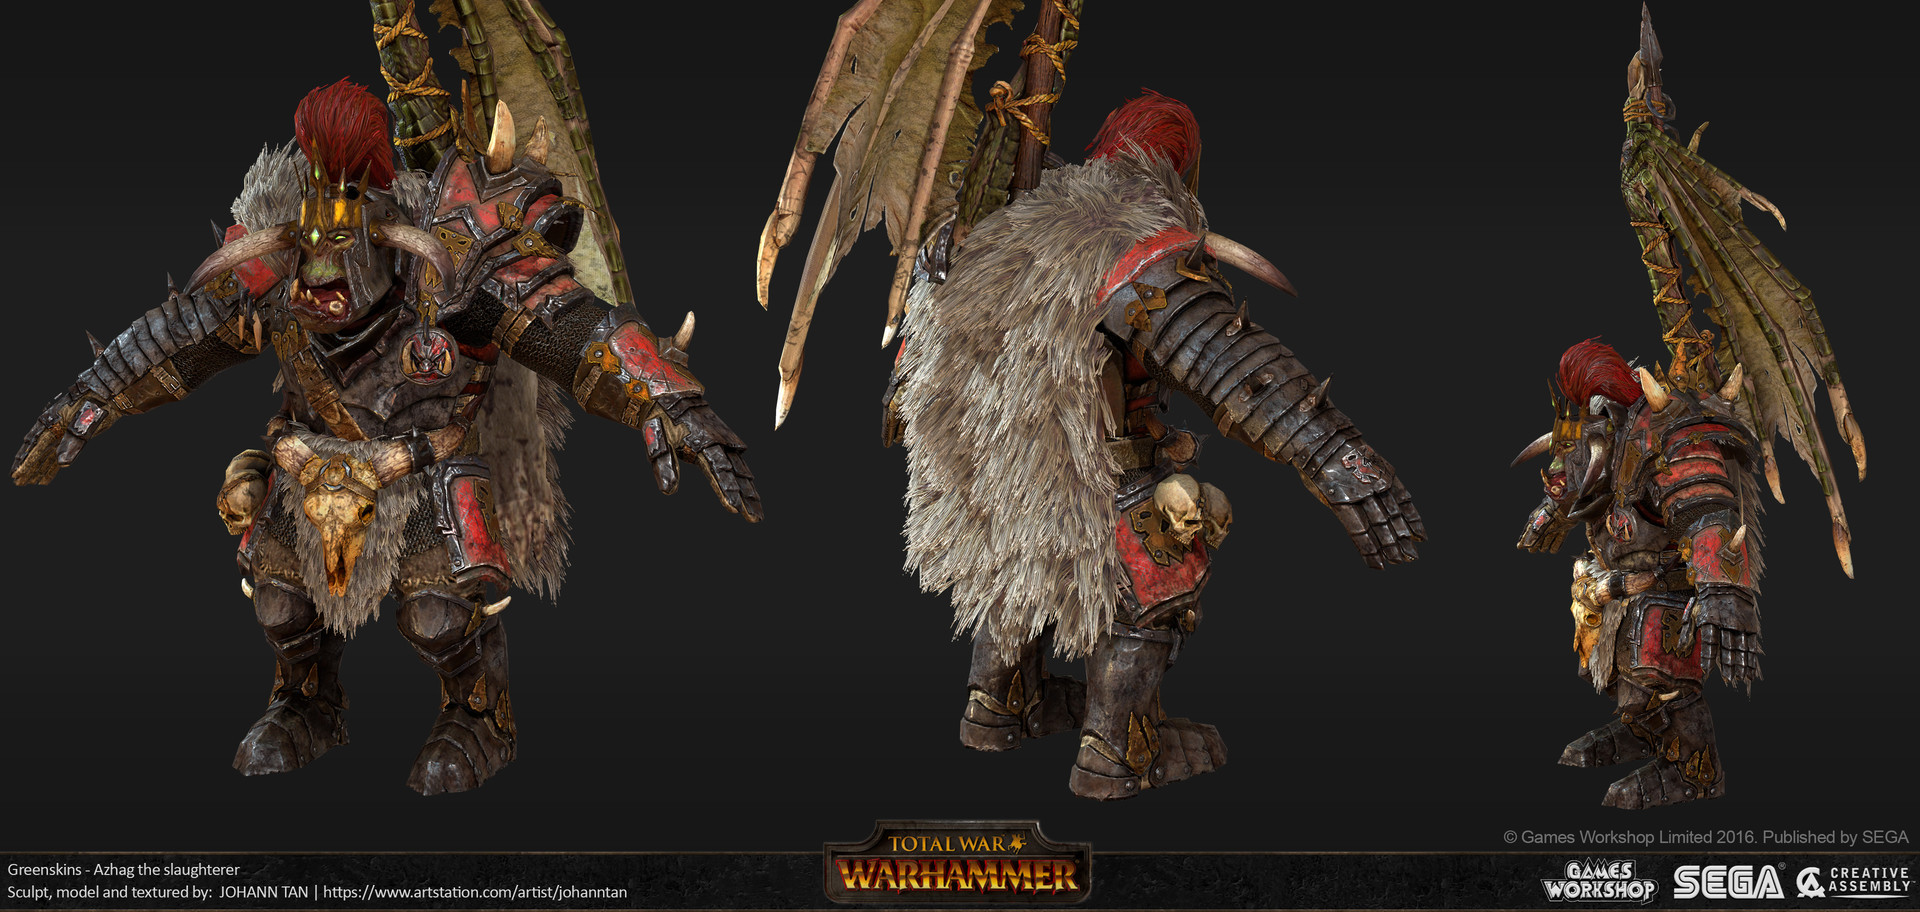 Fine Art: The Art Of Total War: Warhammer